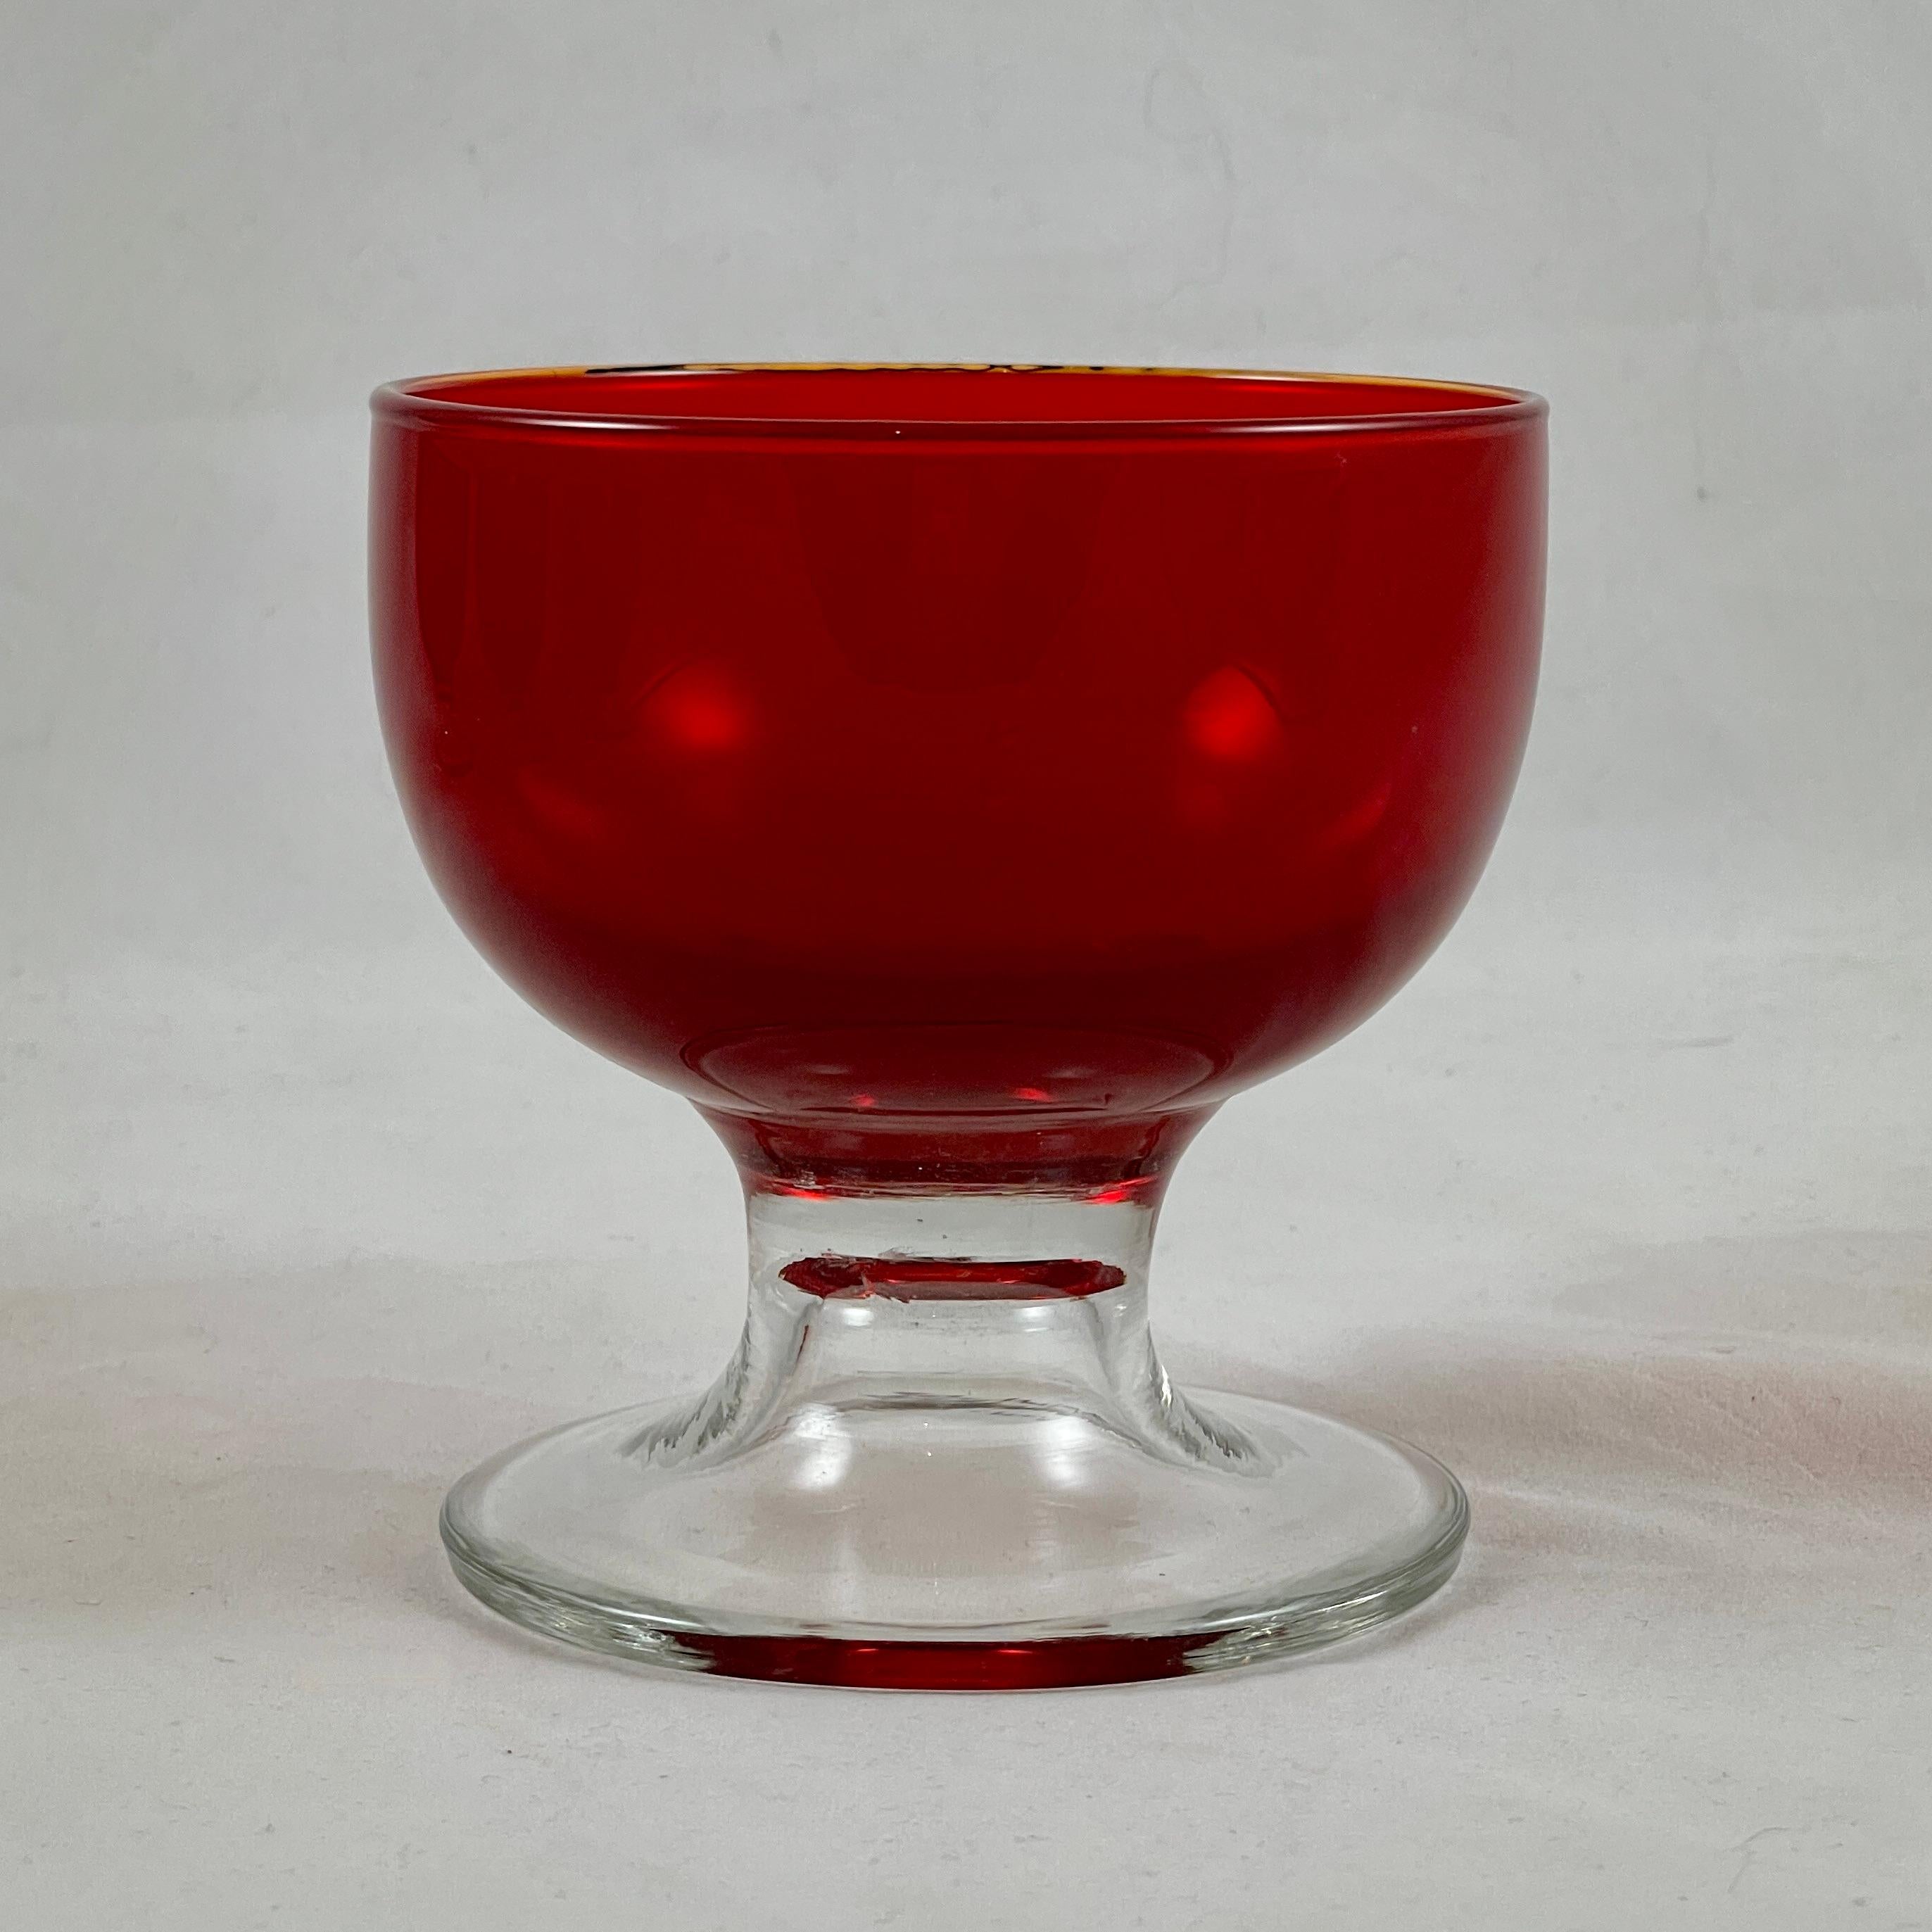 De la région vénitienne du nord de l'Italie, un ensemble de six coupes ou sorbets en verre de Murano, vers 1950-1960.

Les bols rouge rubis sont fusionnés à de lourds socles en verre incolore dans un design italien caractéristique du milieu du